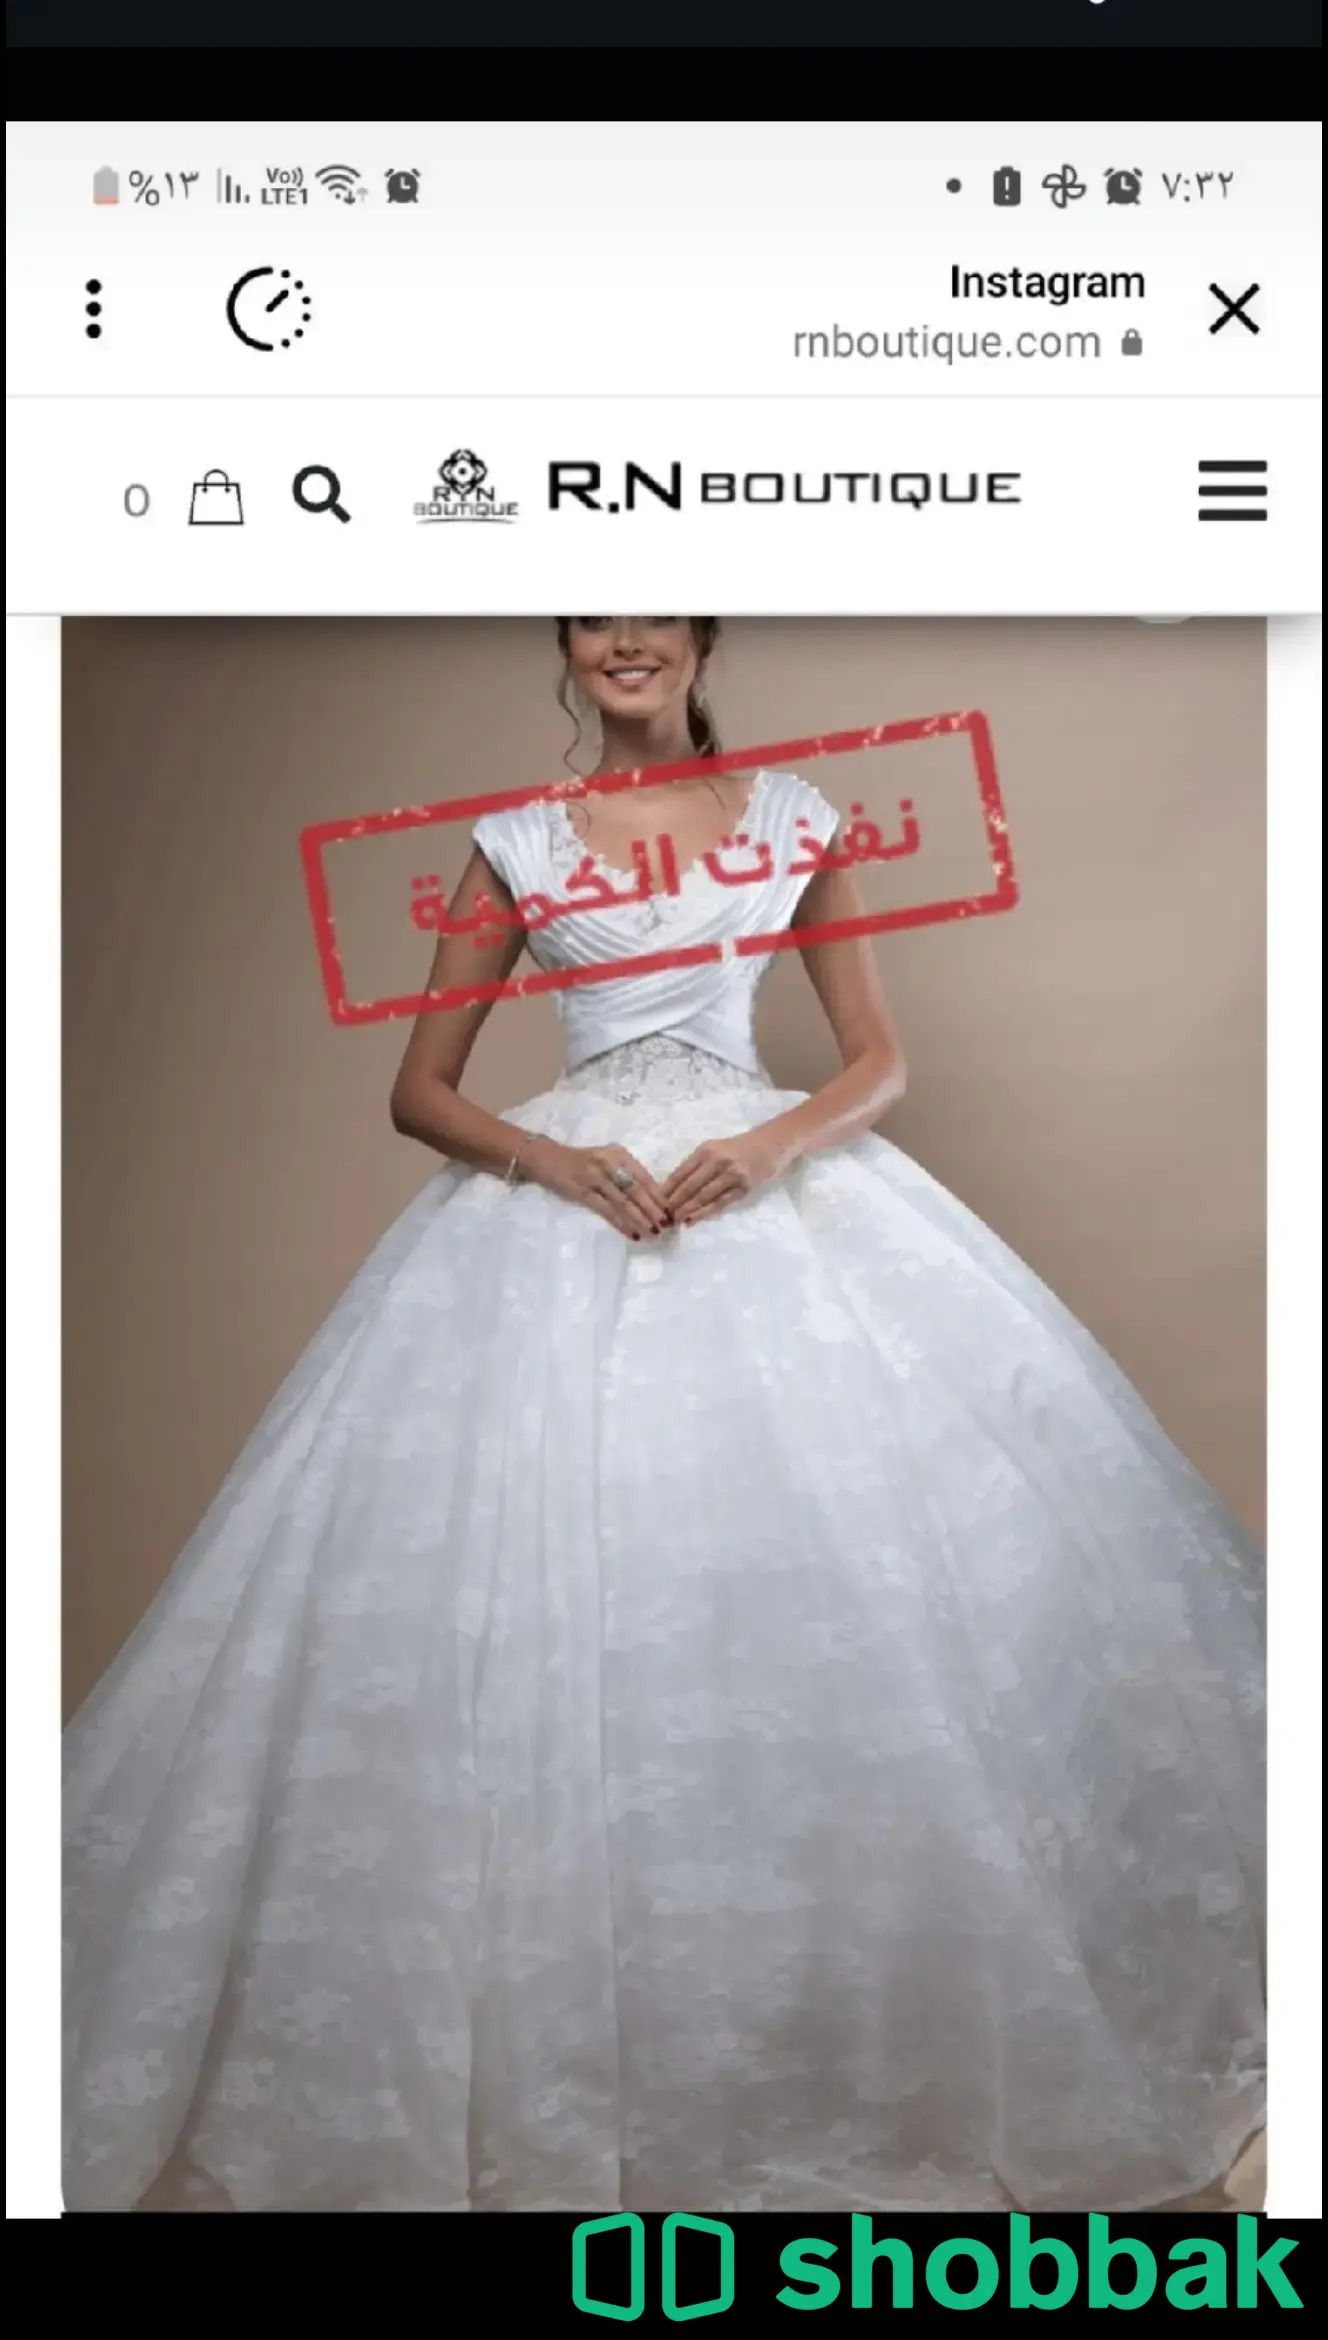 فستان زواج للبيع مرة وحده فقط قبل ٤ايام Shobbak Saudi Arabia